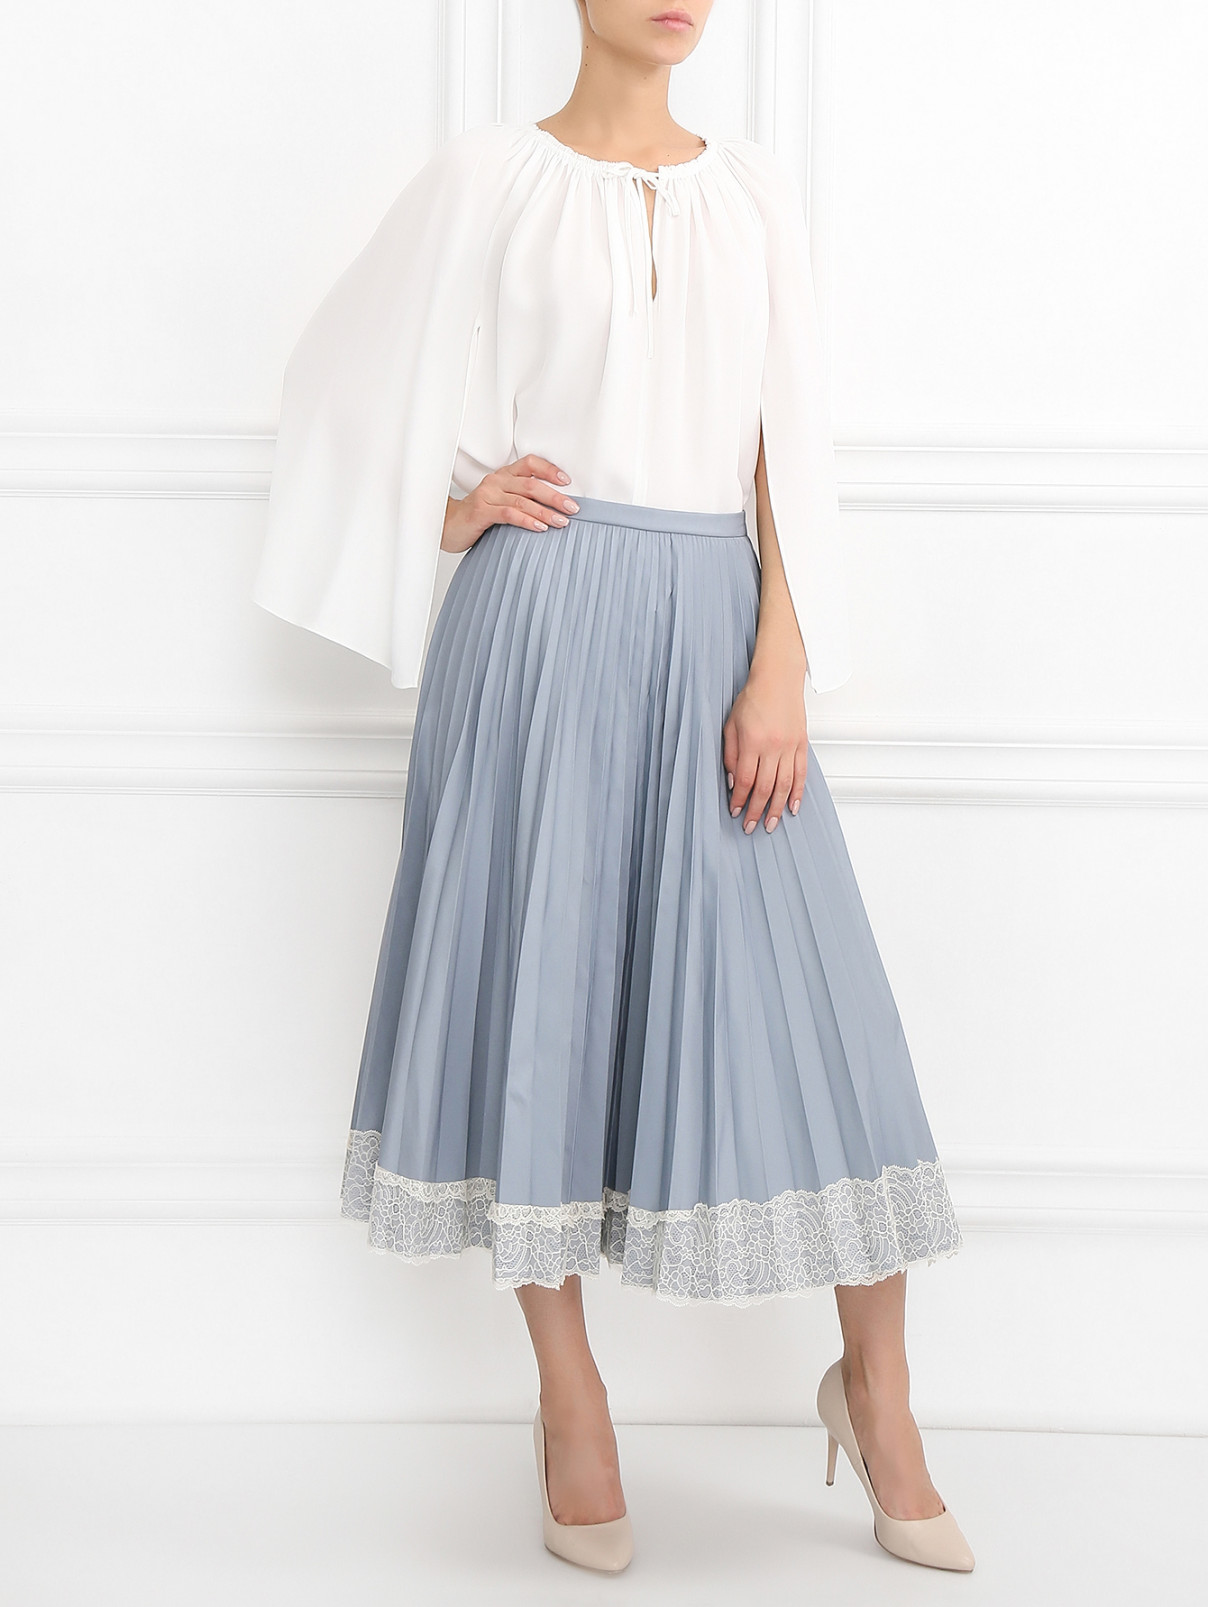 Блуза свободного кроя декорированная складками Dorothee Schumacher  –  Модель Общий вид  – Цвет:  Белый